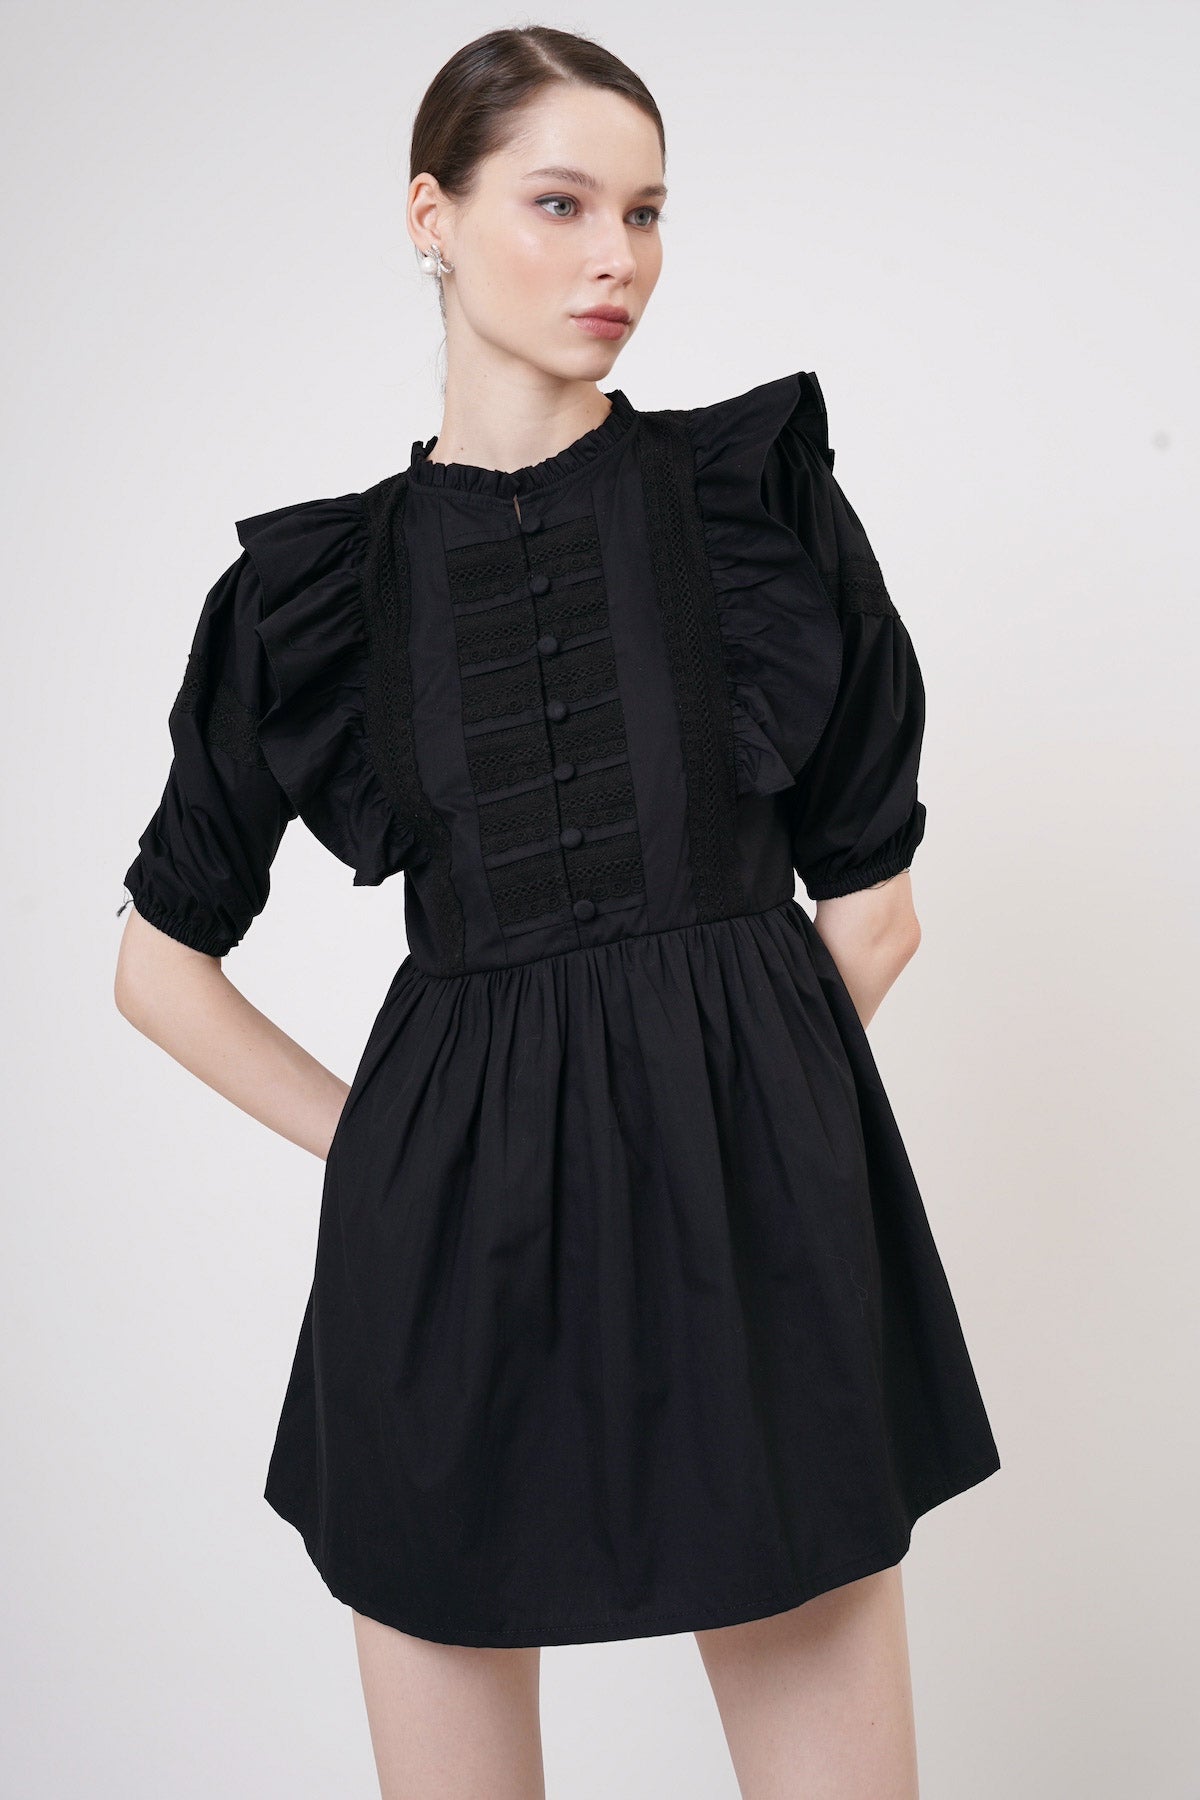 Daisy Lace Dress In Black